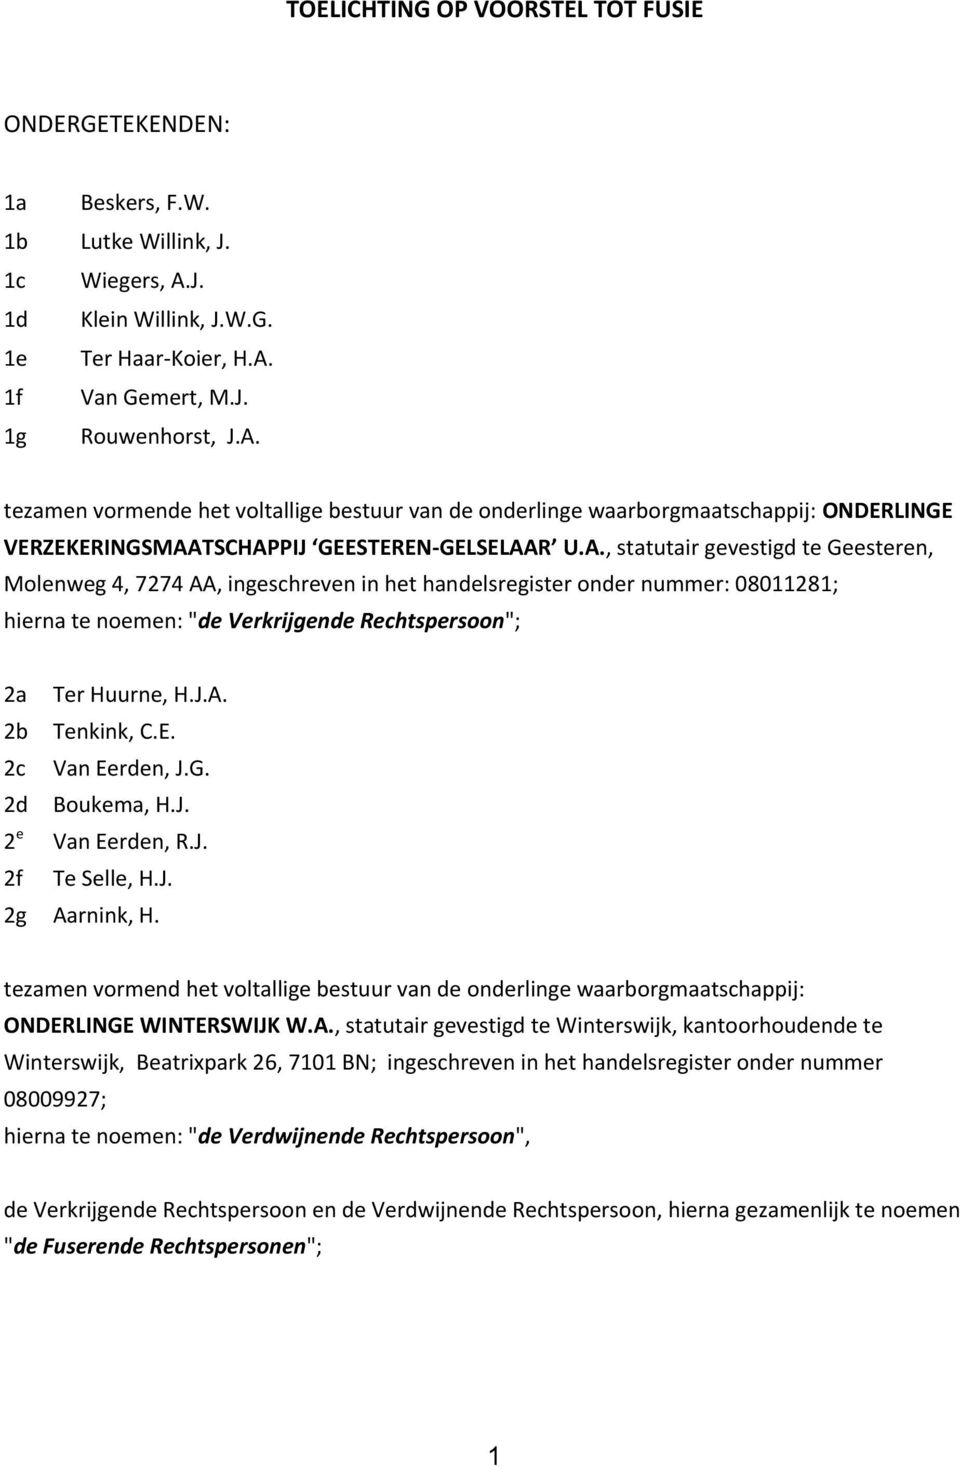 A., statutair gevestigd te Geesteren, Molenweg 4, 7274 AA, ingeschreven in het handelsregister onder nummer: 08011281; hierna te noemen: "de Verkrijgende Rechtspersoon"; 2a Ter Huurne, H.J.A. 2b Tenkink, C.